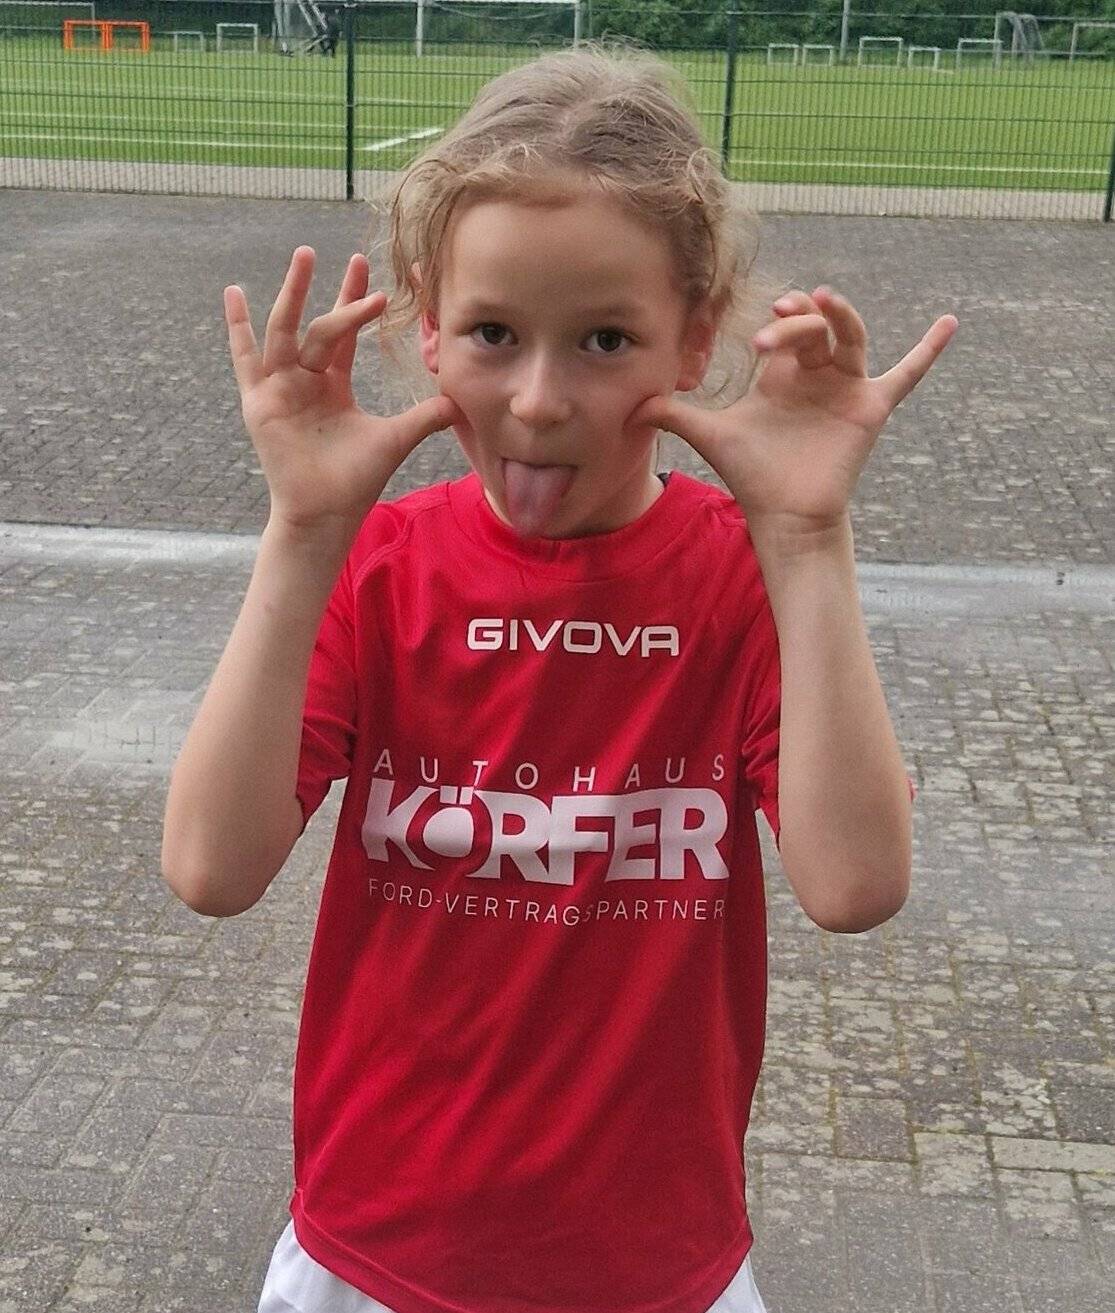 Feena Stüttgen (7) will Profi-Fußballer werden. Sie schwärmt für den 1. FC Köln.